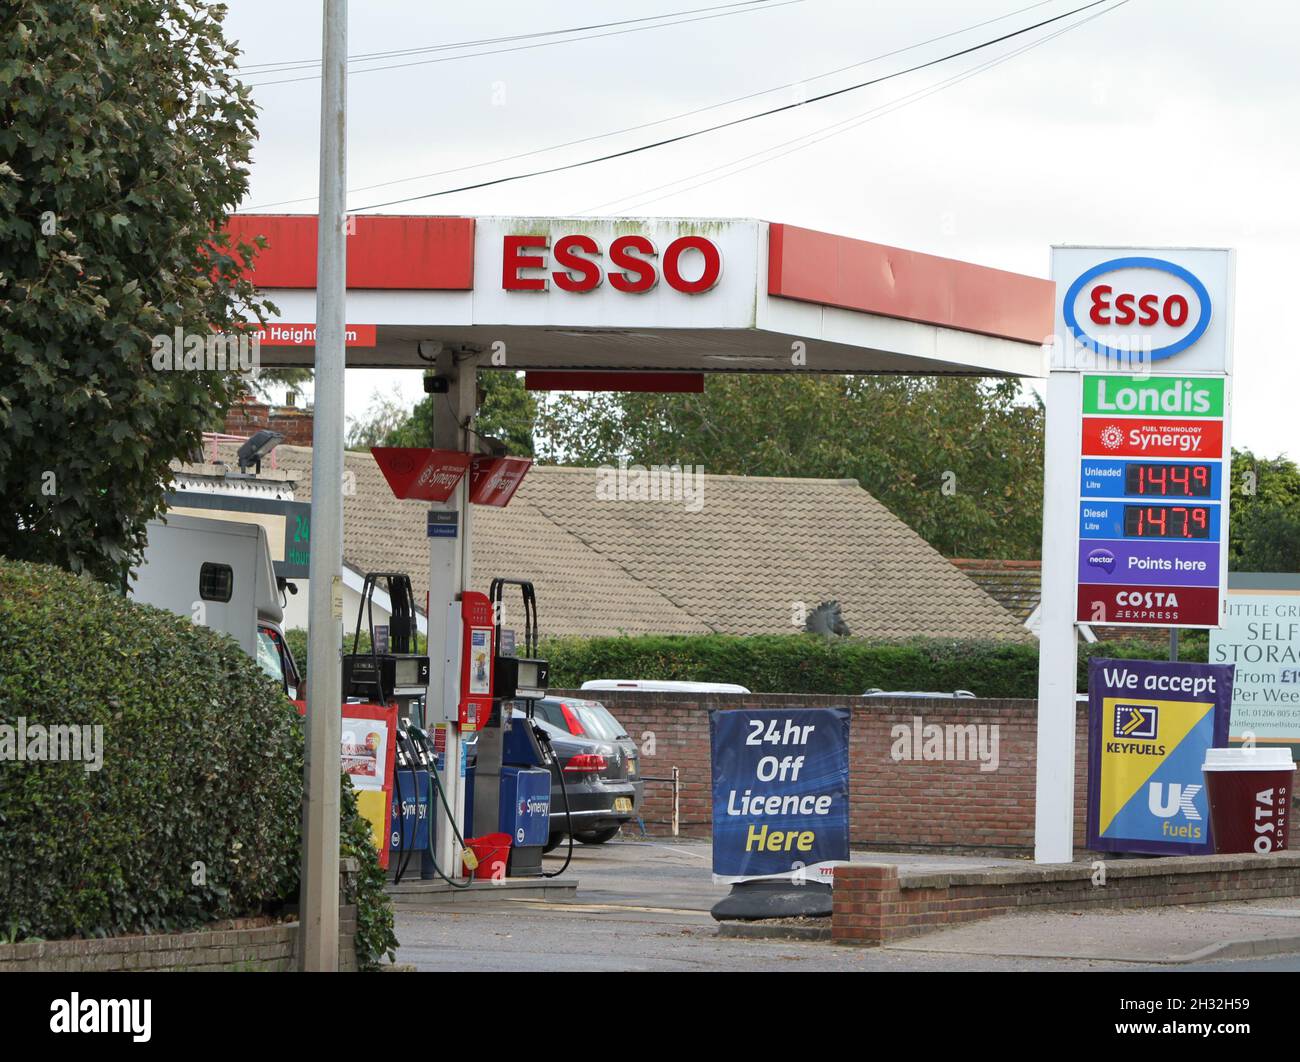 Elmstead Market, Royaume-Uni. 25th octobre 2021. Le prix moyen de l'essence au Royaume-Uni a atteint un niveau record, dépassant le précédent record établi en avril 2012. Crédit : Eastern Views/Alamy Live News Banque D'Images